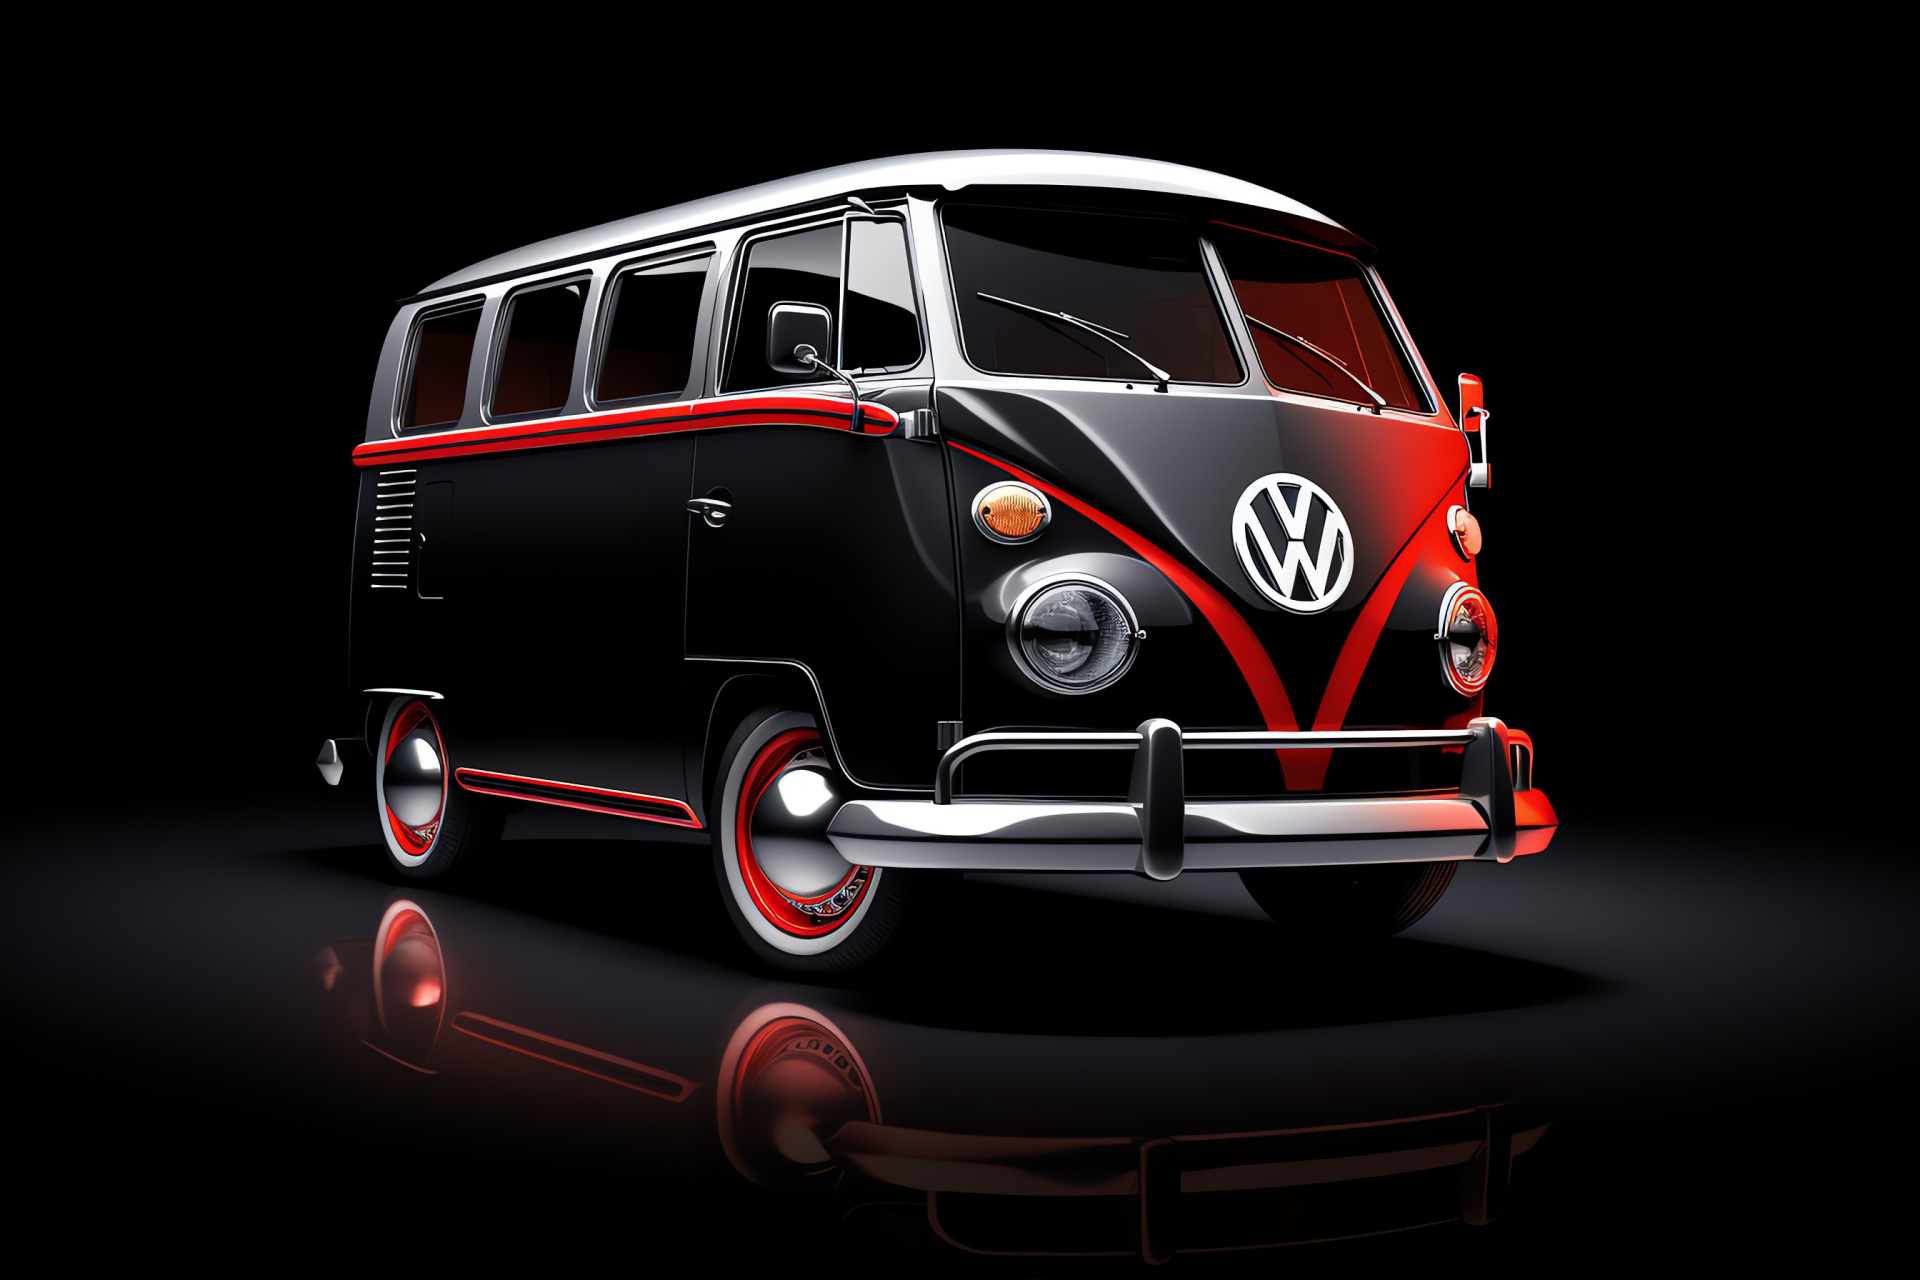 VW Bus T3 Joker model, elevated perspective, fiery red hue, stark onyx contrast, HD Desktop Image